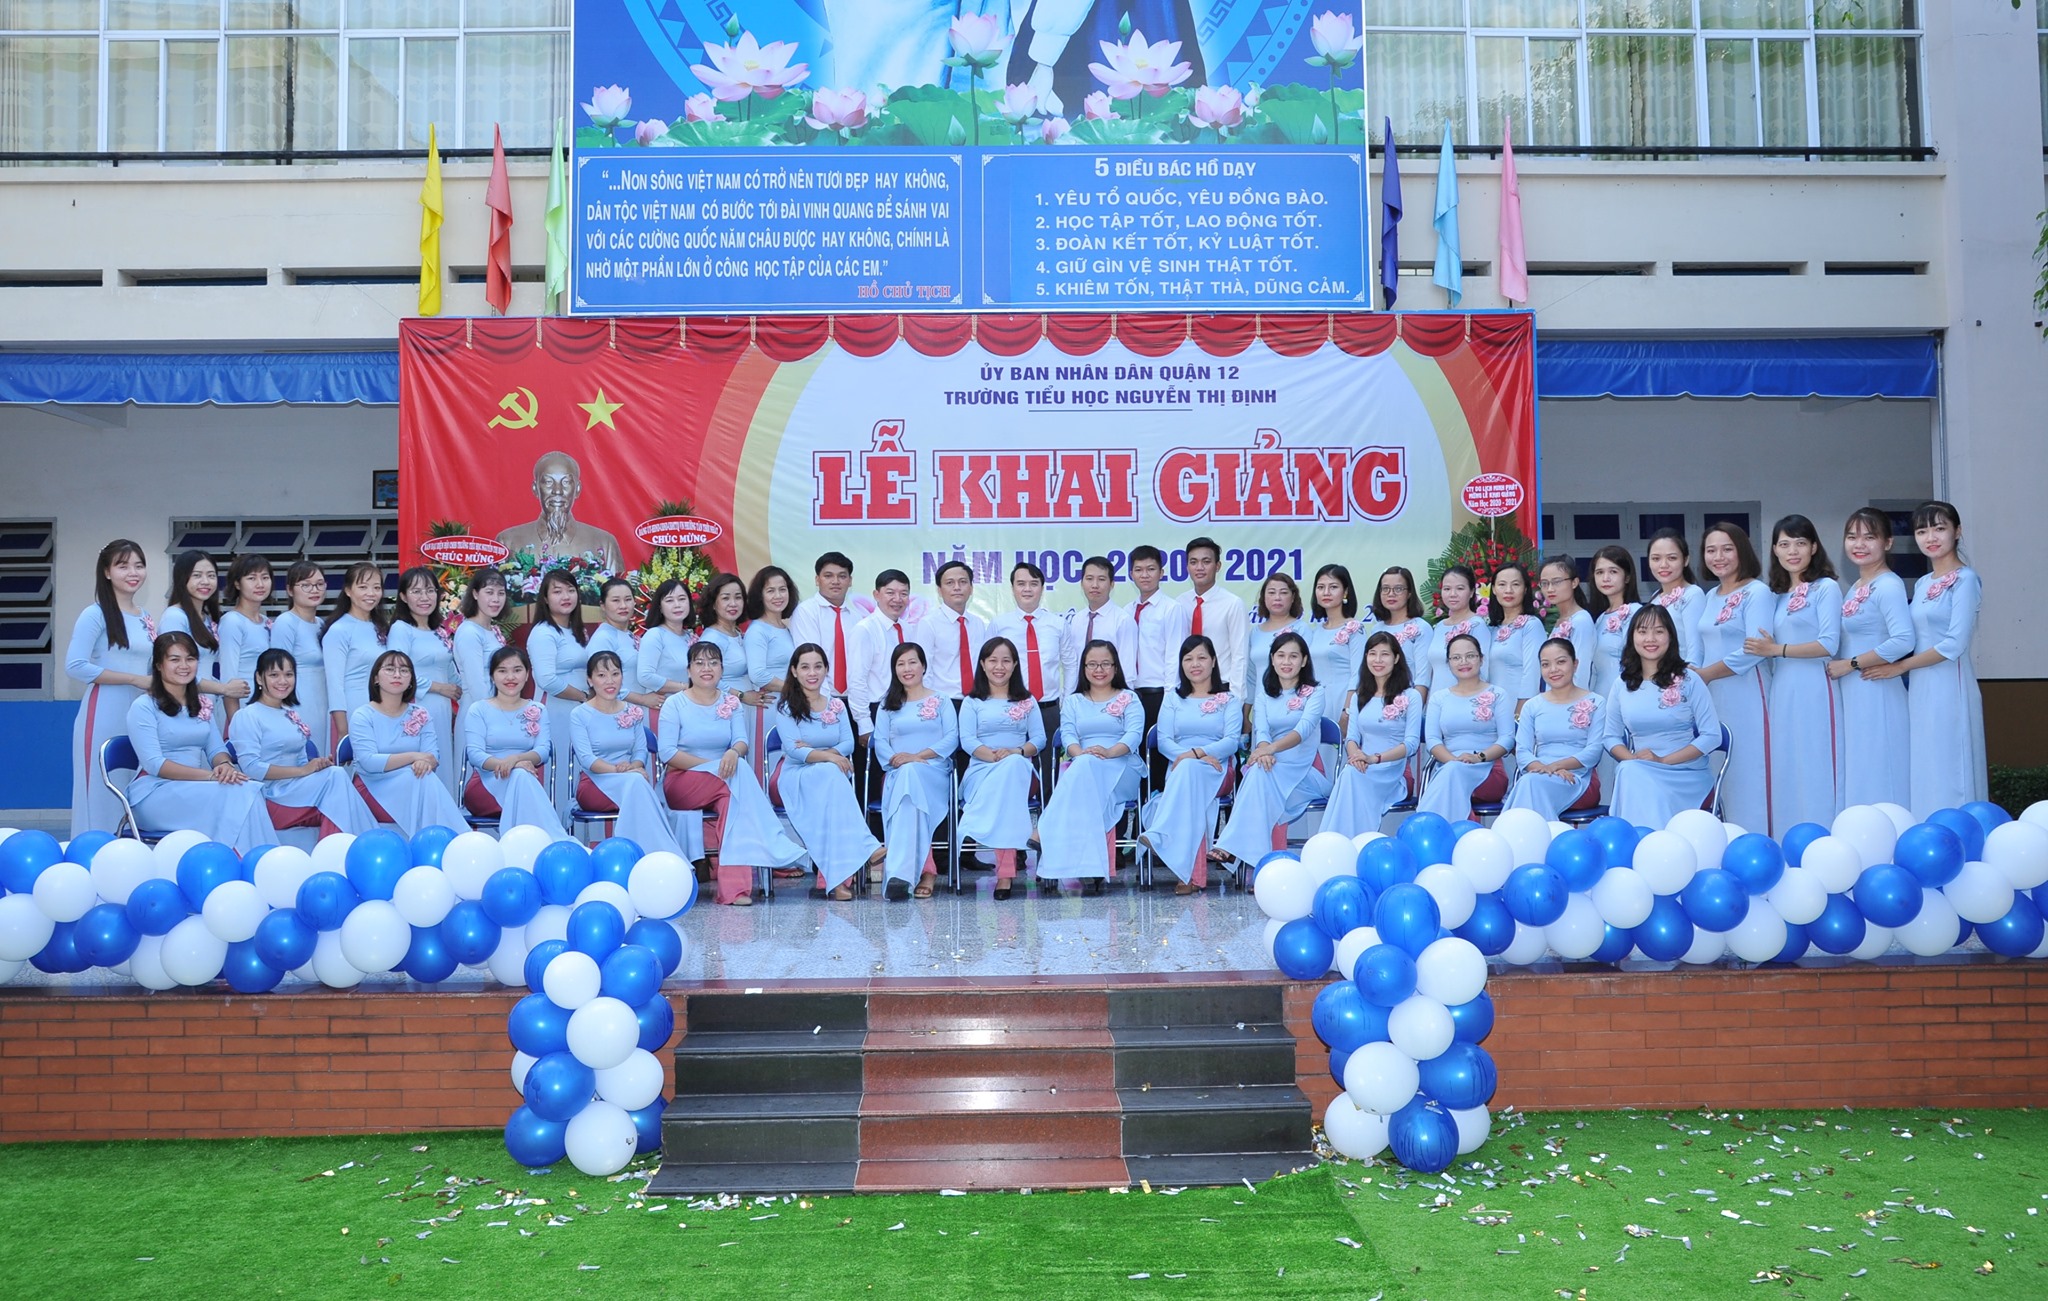 Trường Tiểu học Nguyễn Thị Định ảnh 1